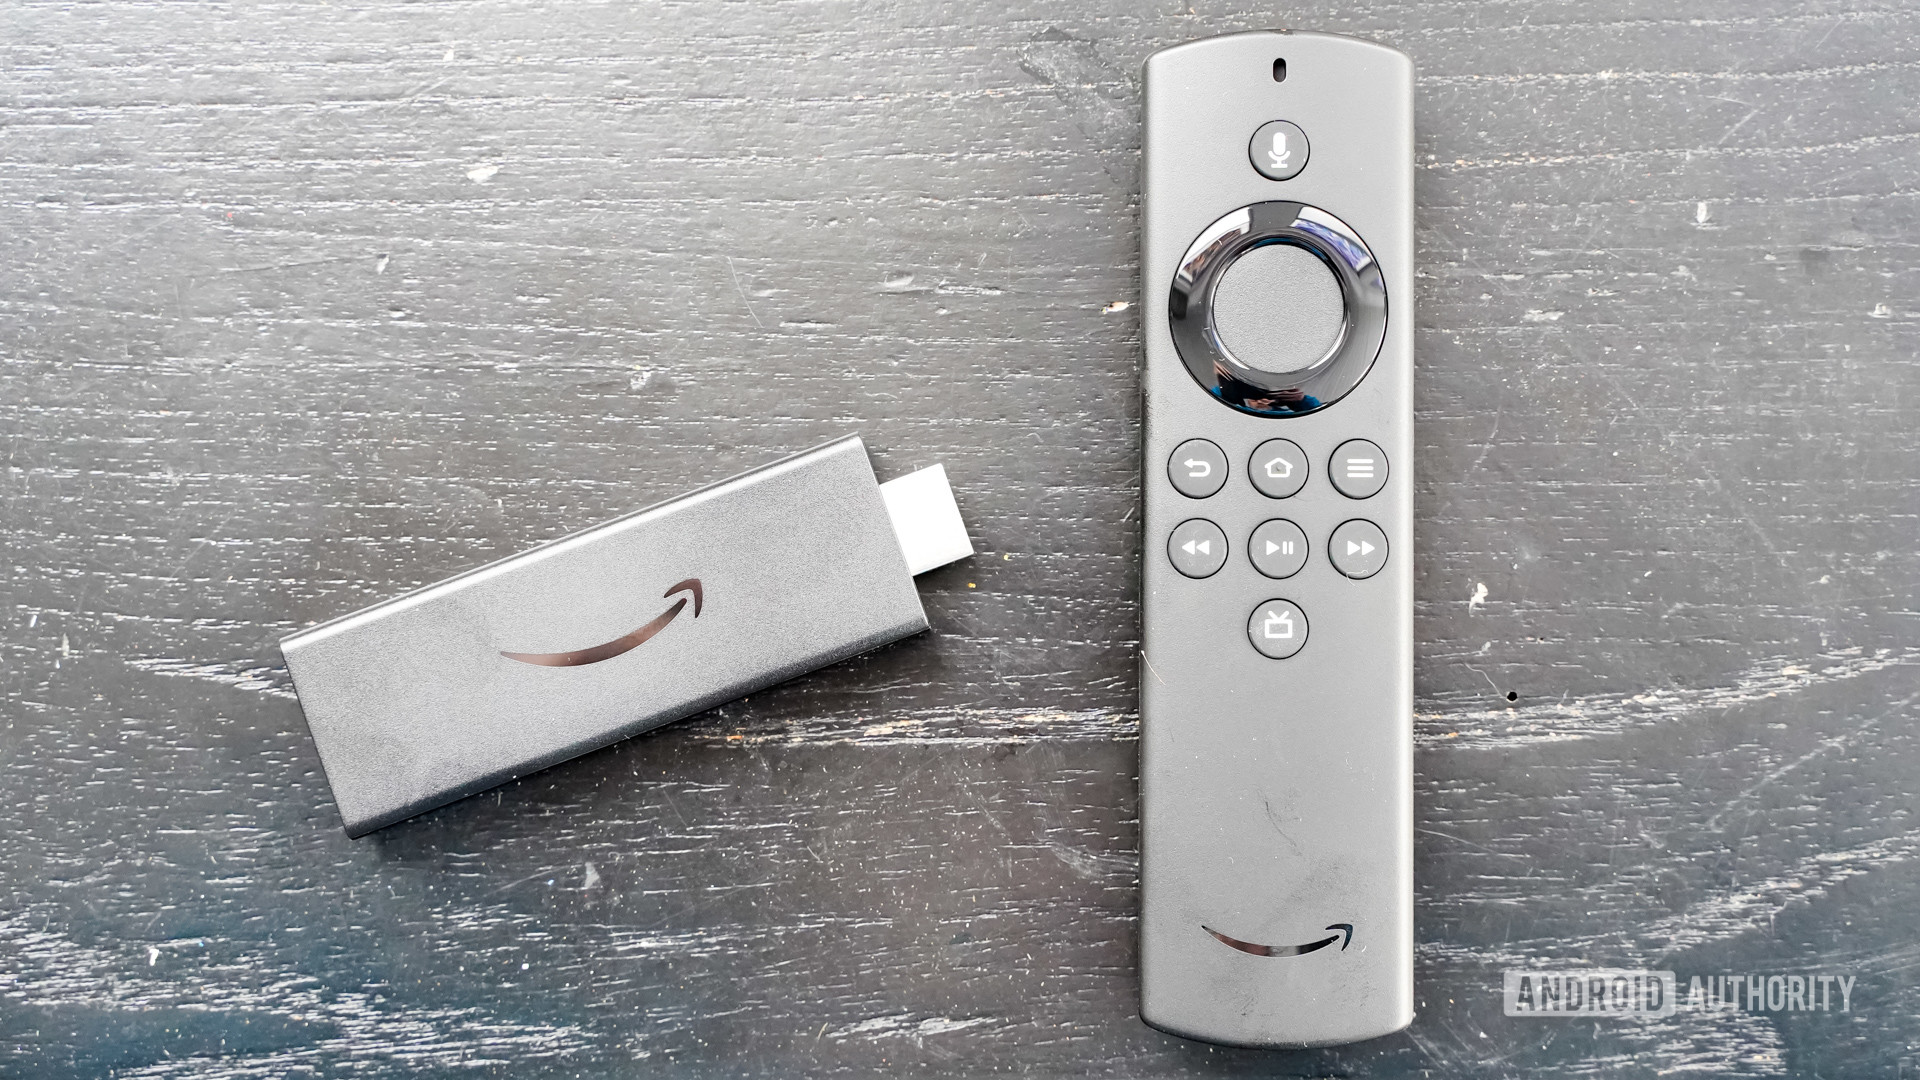 Amazon Fire TV Stick Lite with Remote Control